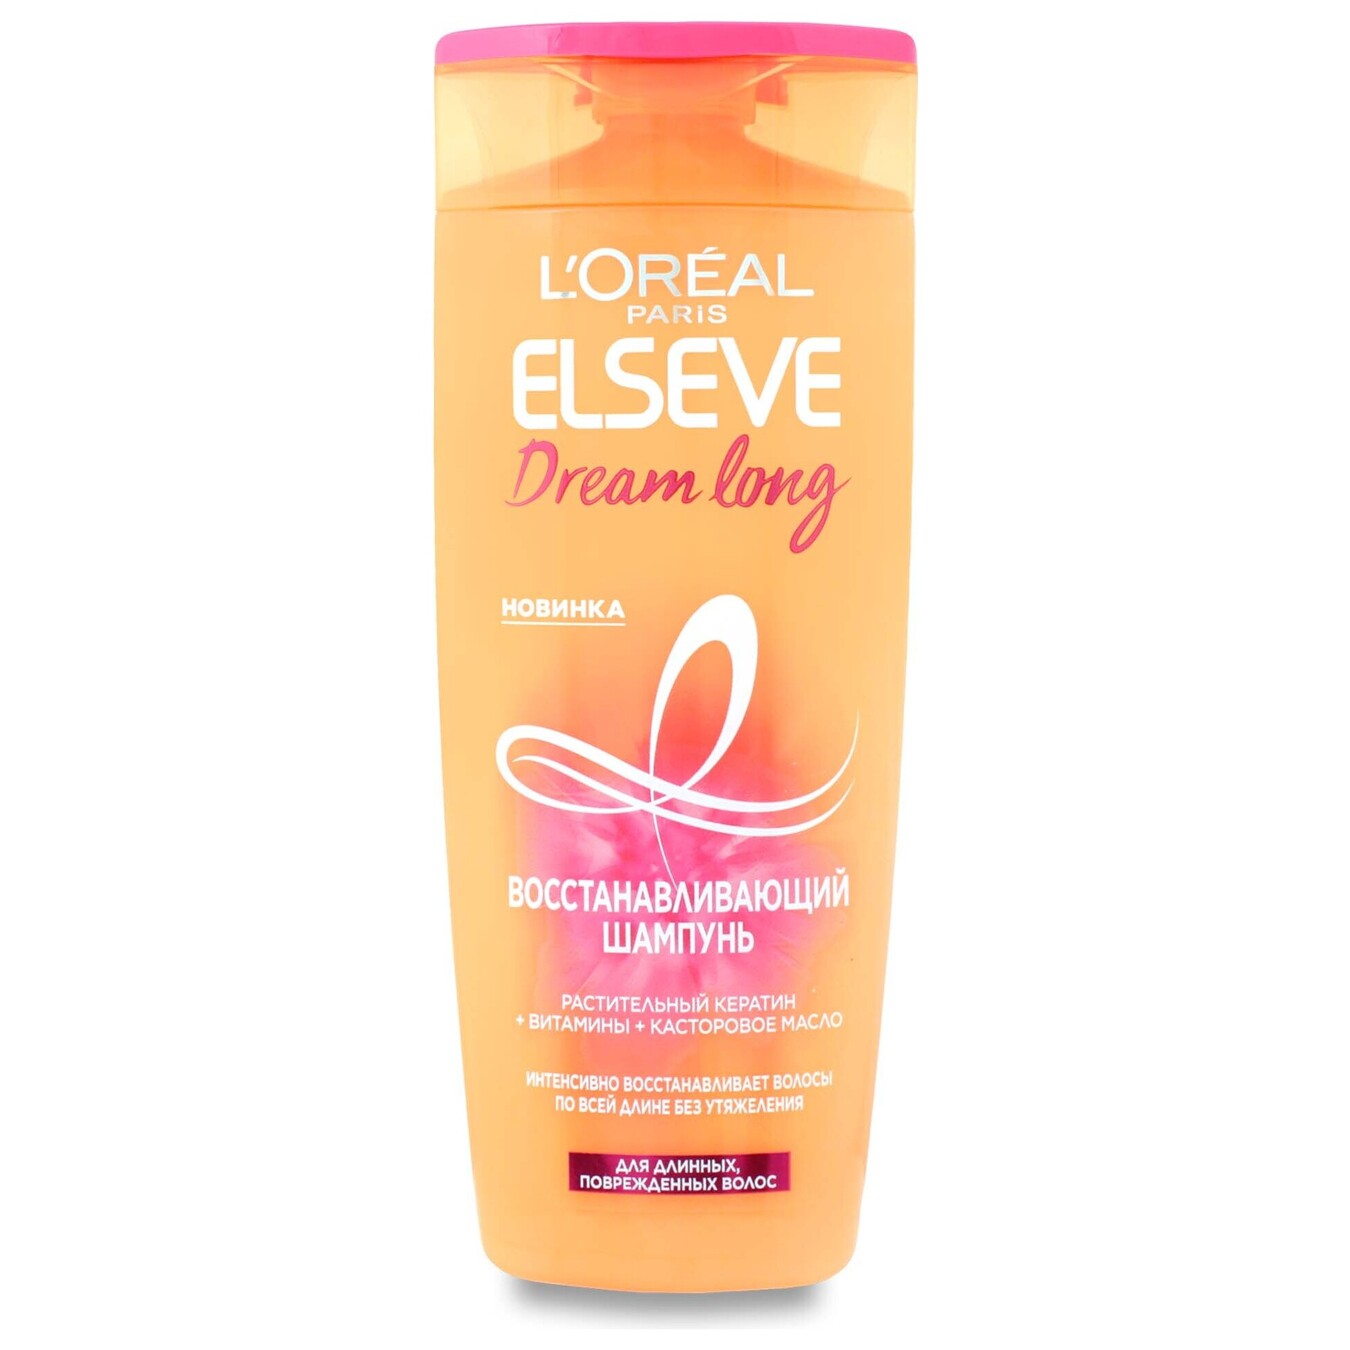 Shampoo for long damaged hair dream long Elseve 250 ml